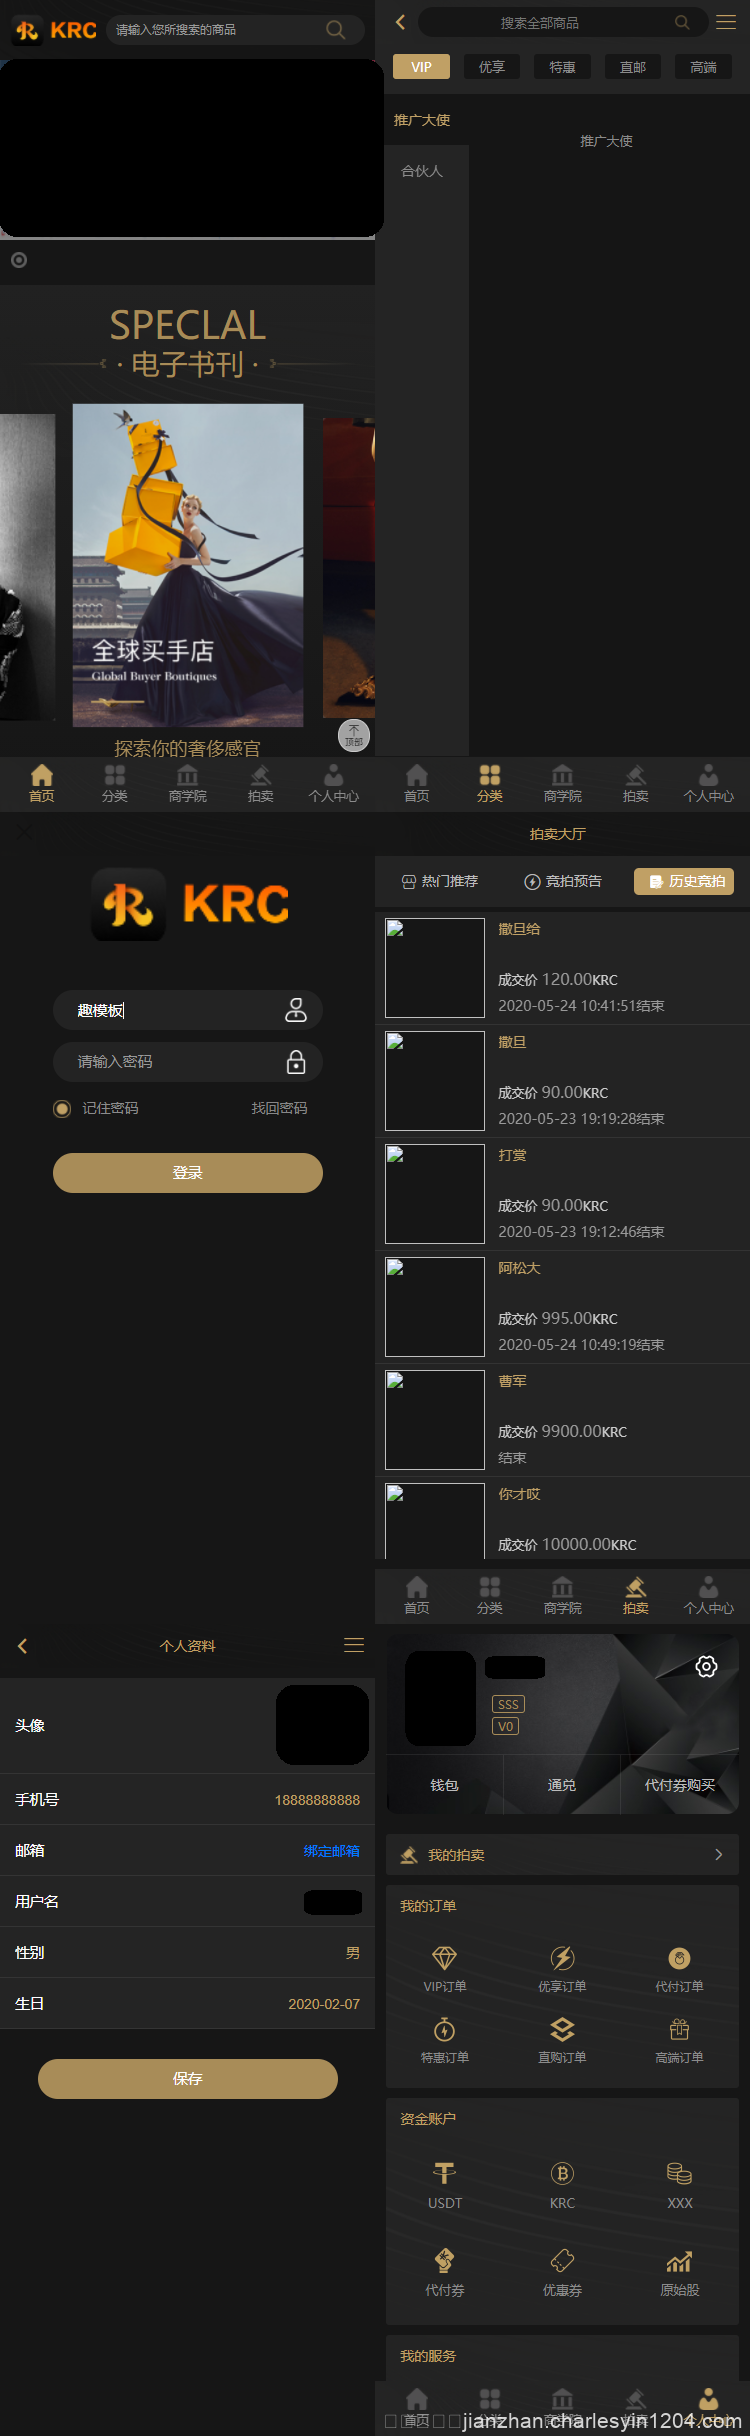 KRC跨境商城系统 拍卖系统 竞拍系统 高端商城 虚拟币支付源码下载